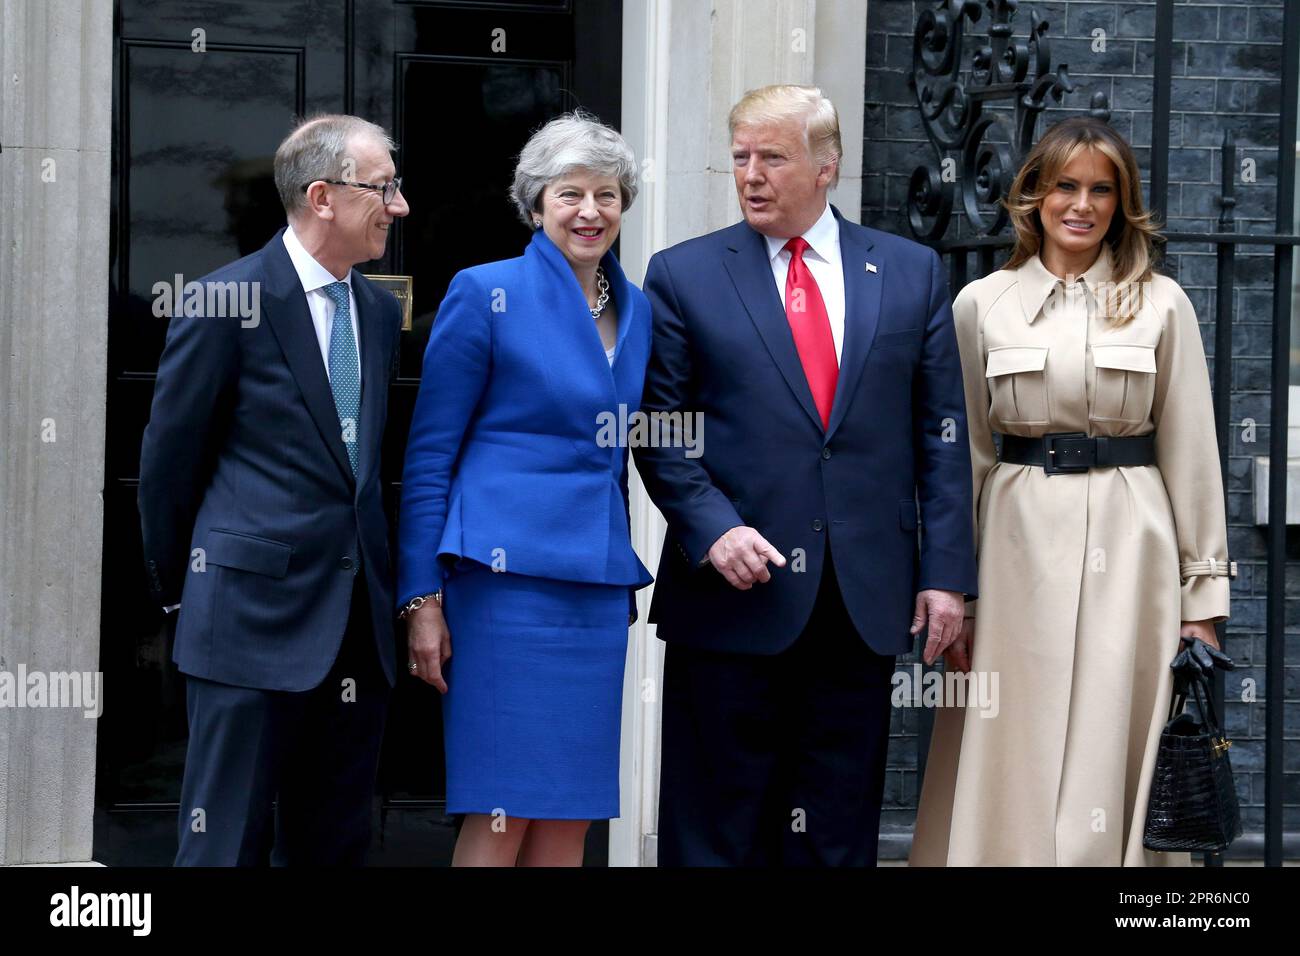 Philip May, la première ministre britannique Theresa May, le président américain Donald Trump et la première dame des États-Unis Melania Trump visitent le numéro 10 Downing Street à Londres. Banque D'Images